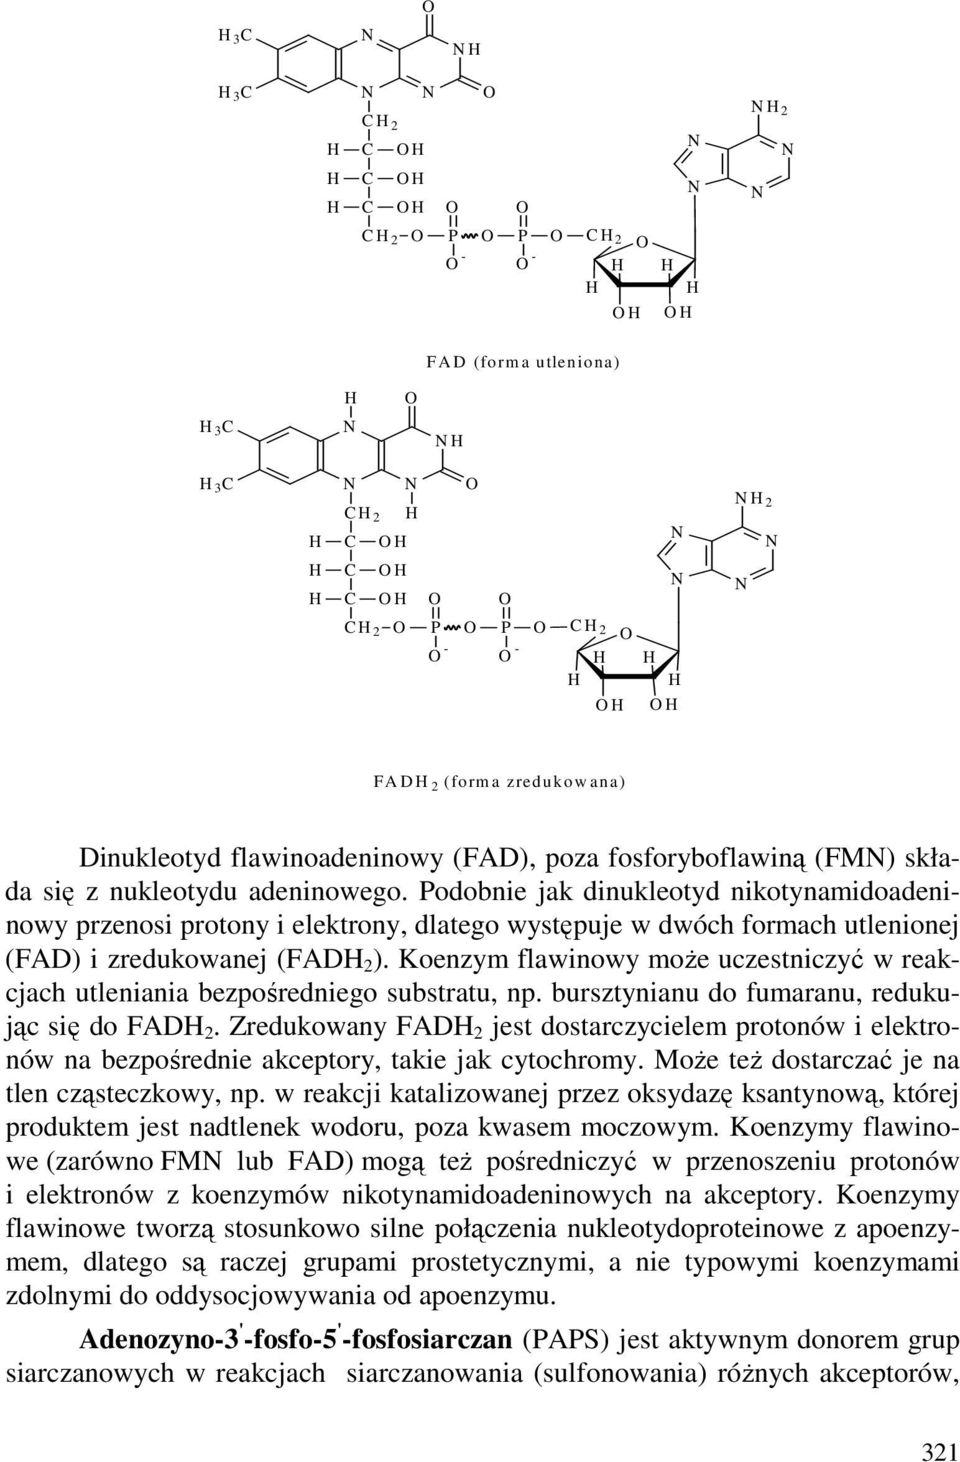 Koenzym flawinowy moŝe uczestniczyć w reakcjach utleniania bezpośredniego substratu, np. bursztynianu do fumaranu, redukując się do FAD 2.